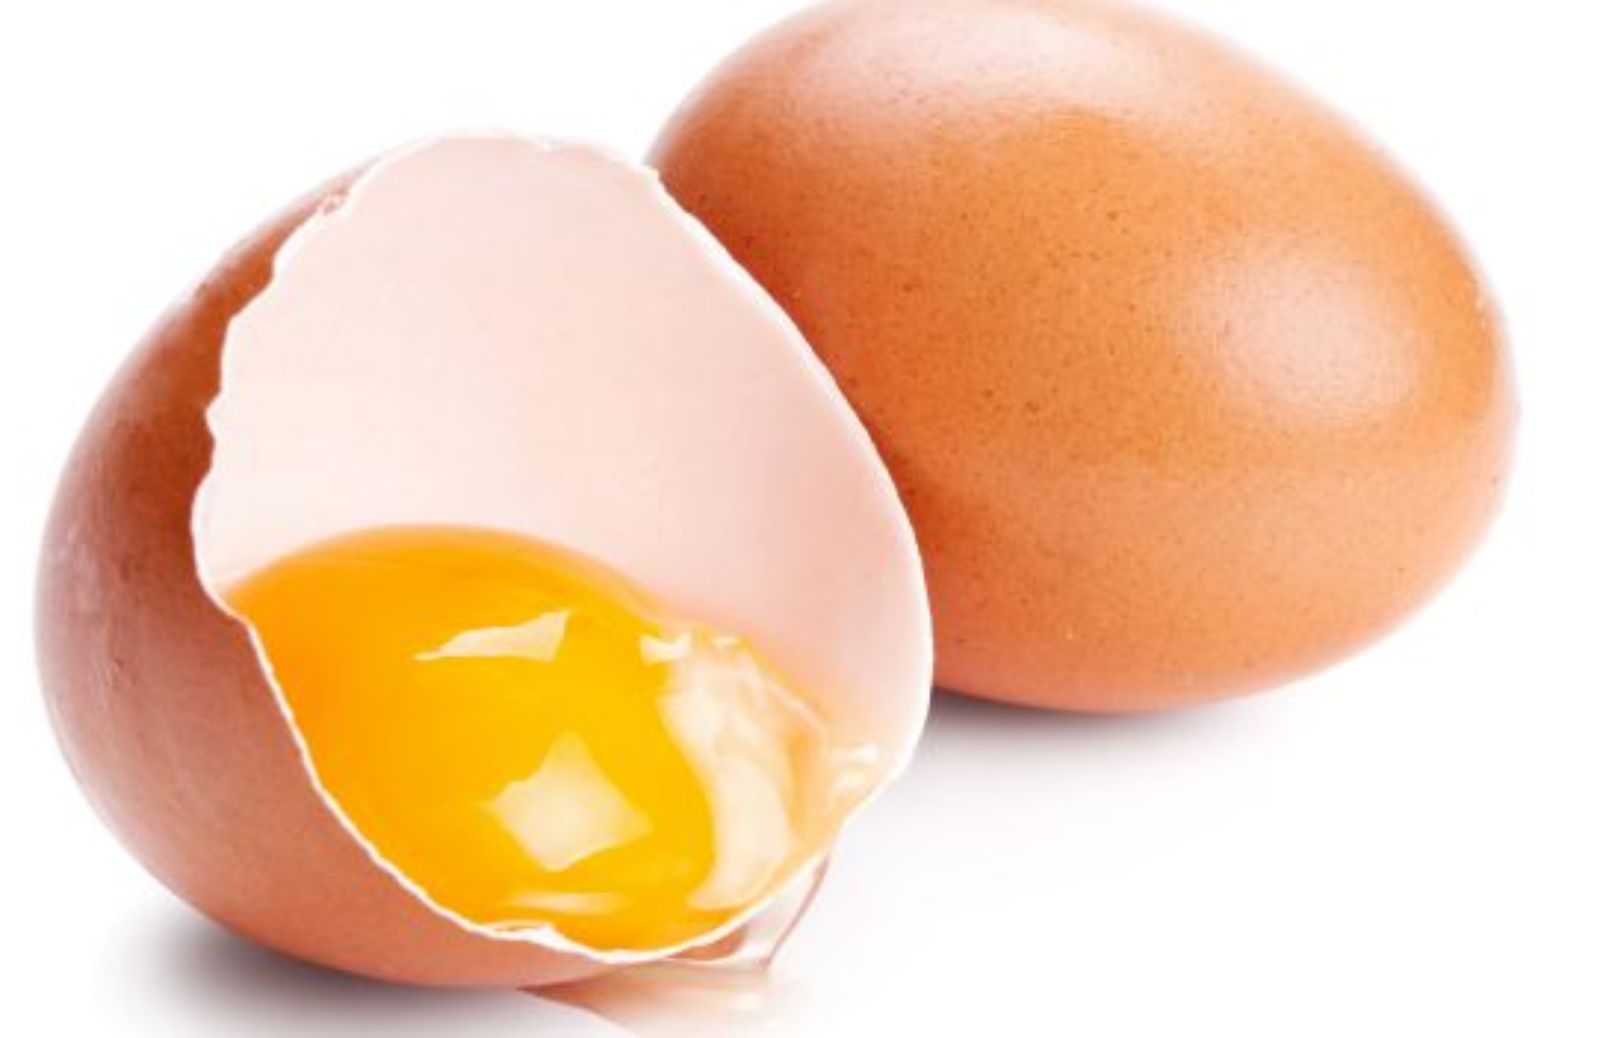 Come leggere l'etichetta delle uova